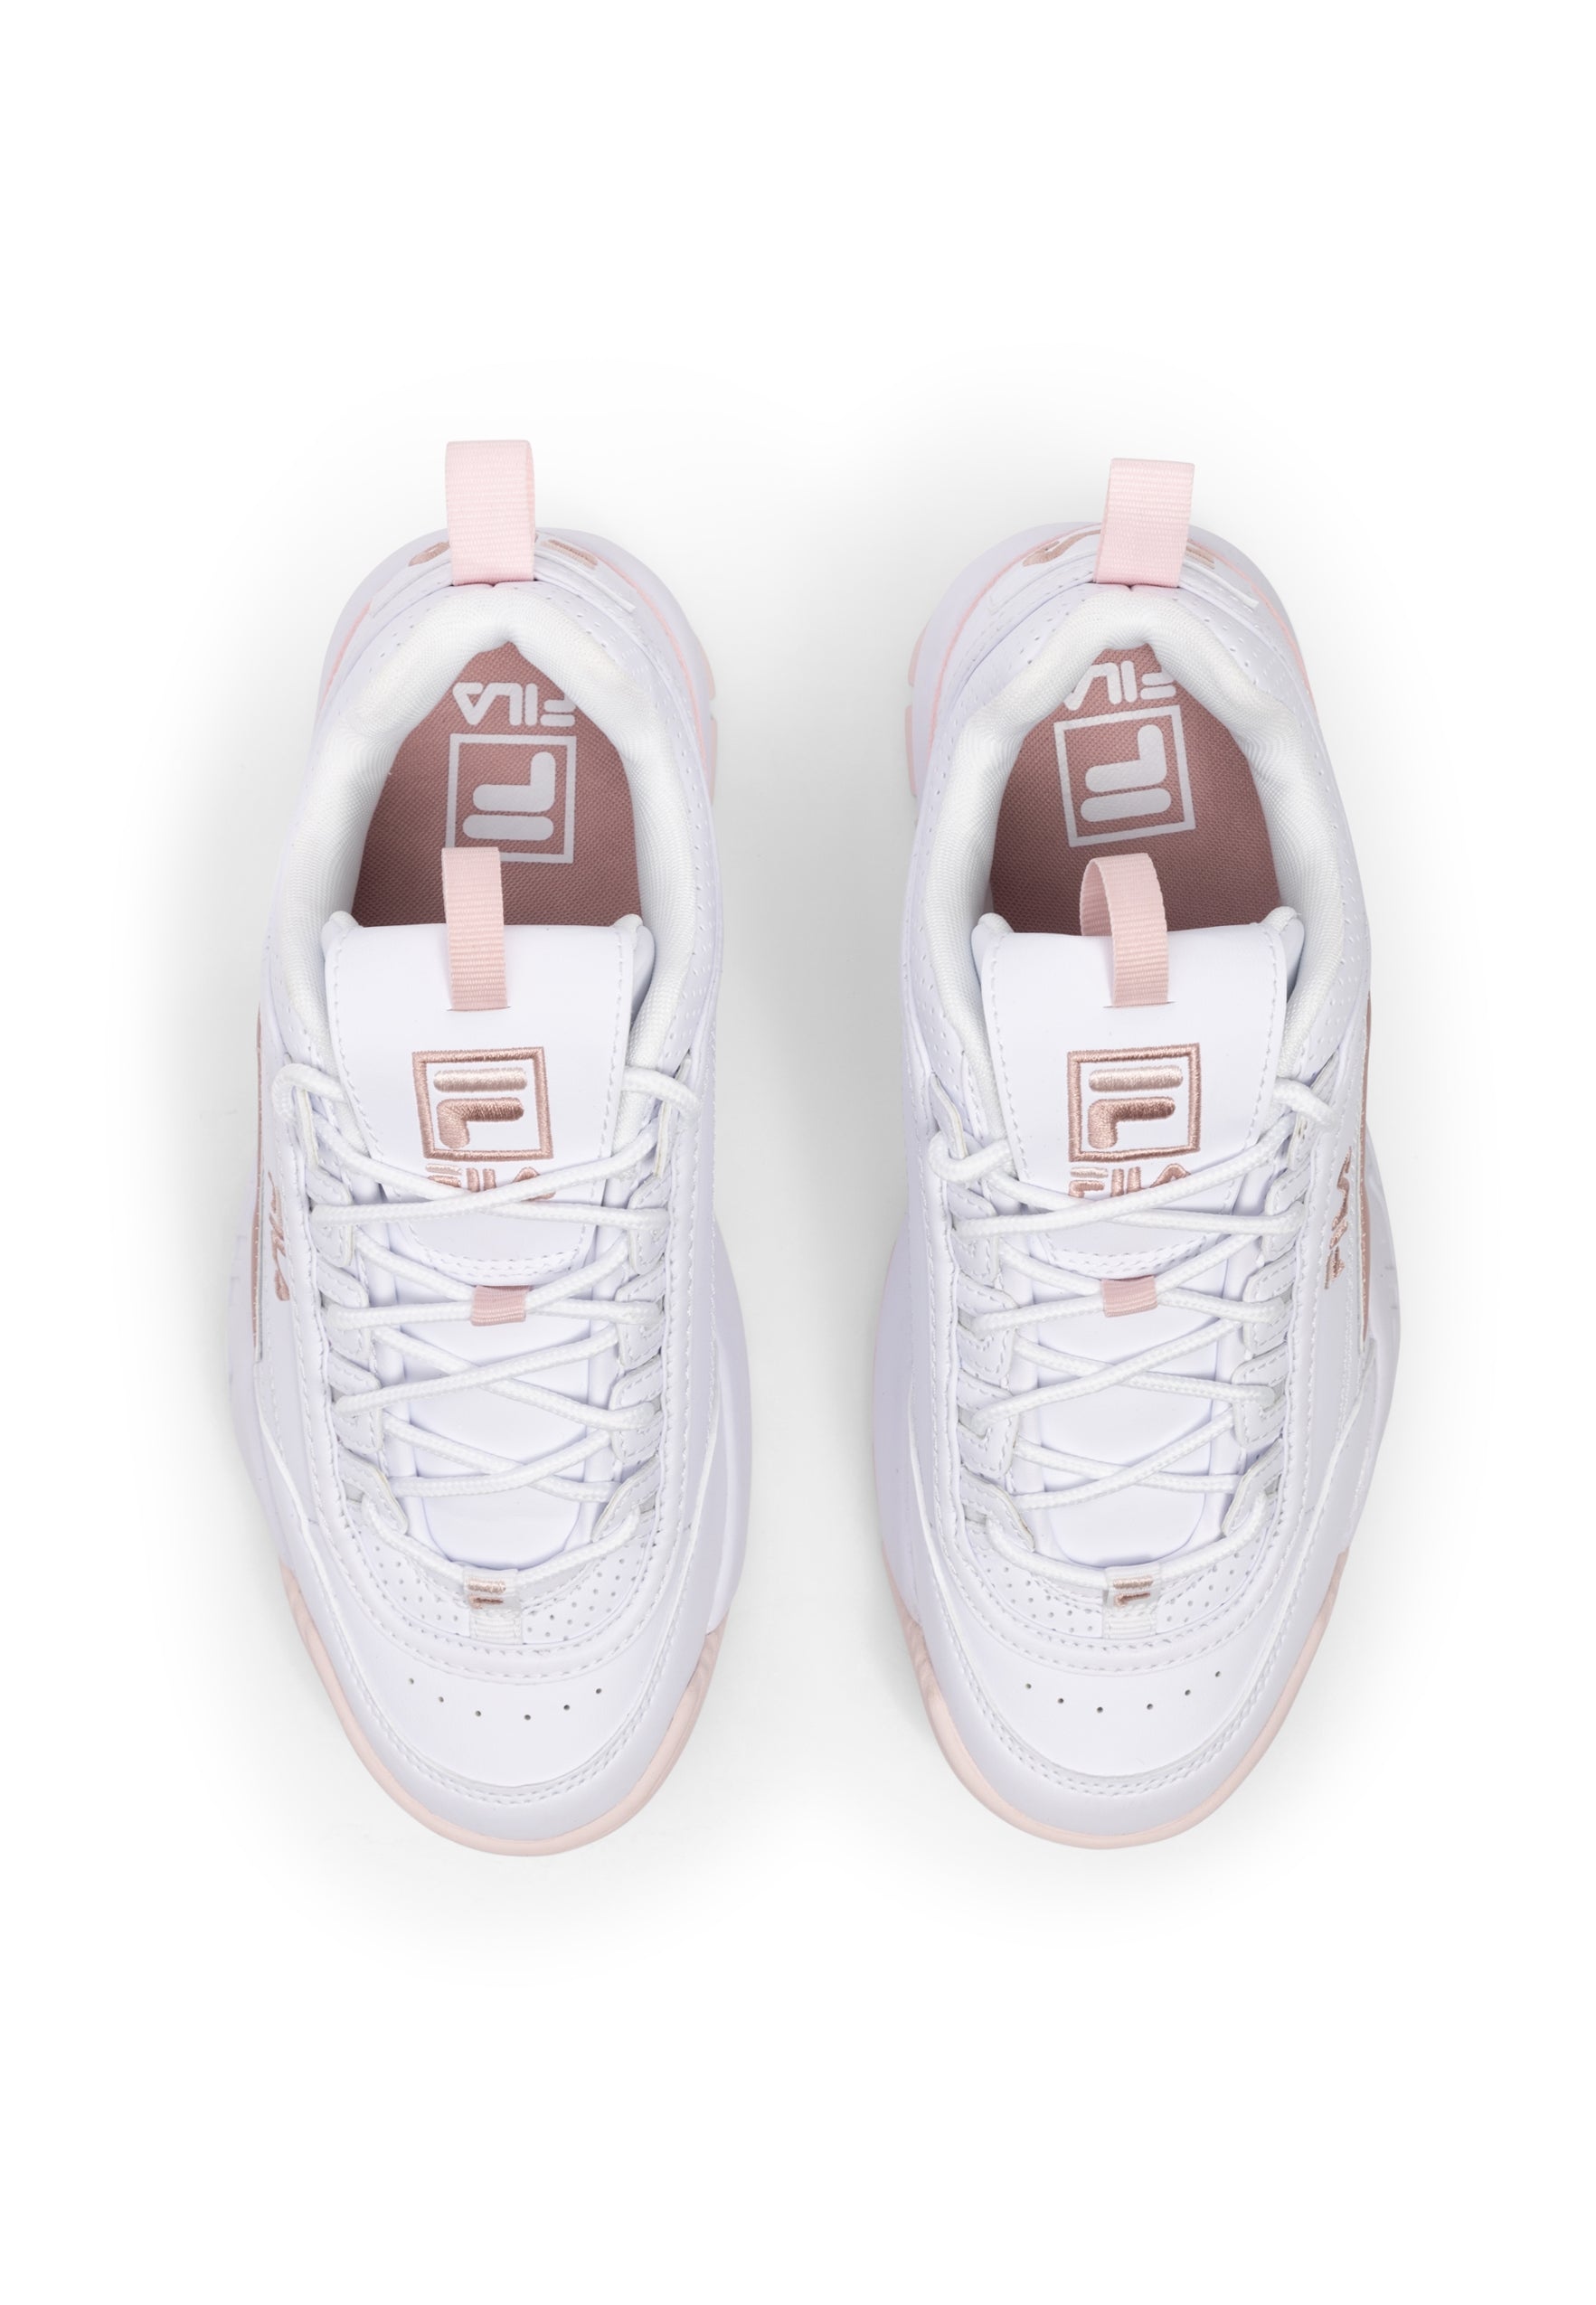 Disruptor CB Wmn in White-Mauve Chalk Sneakers Fila   